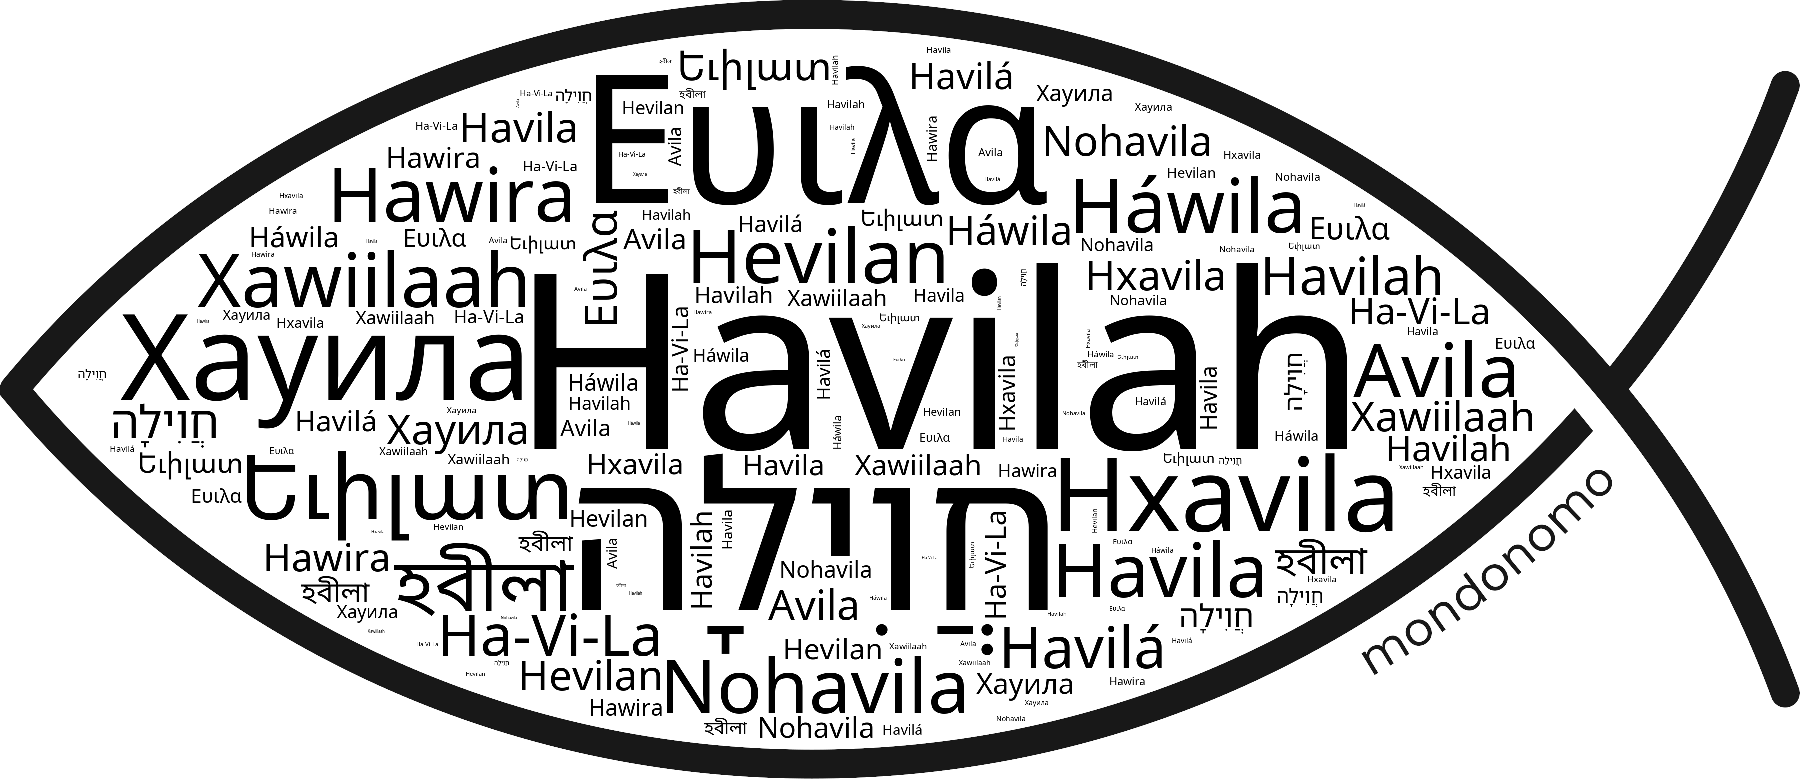 Name Havilah in the world's Bibles